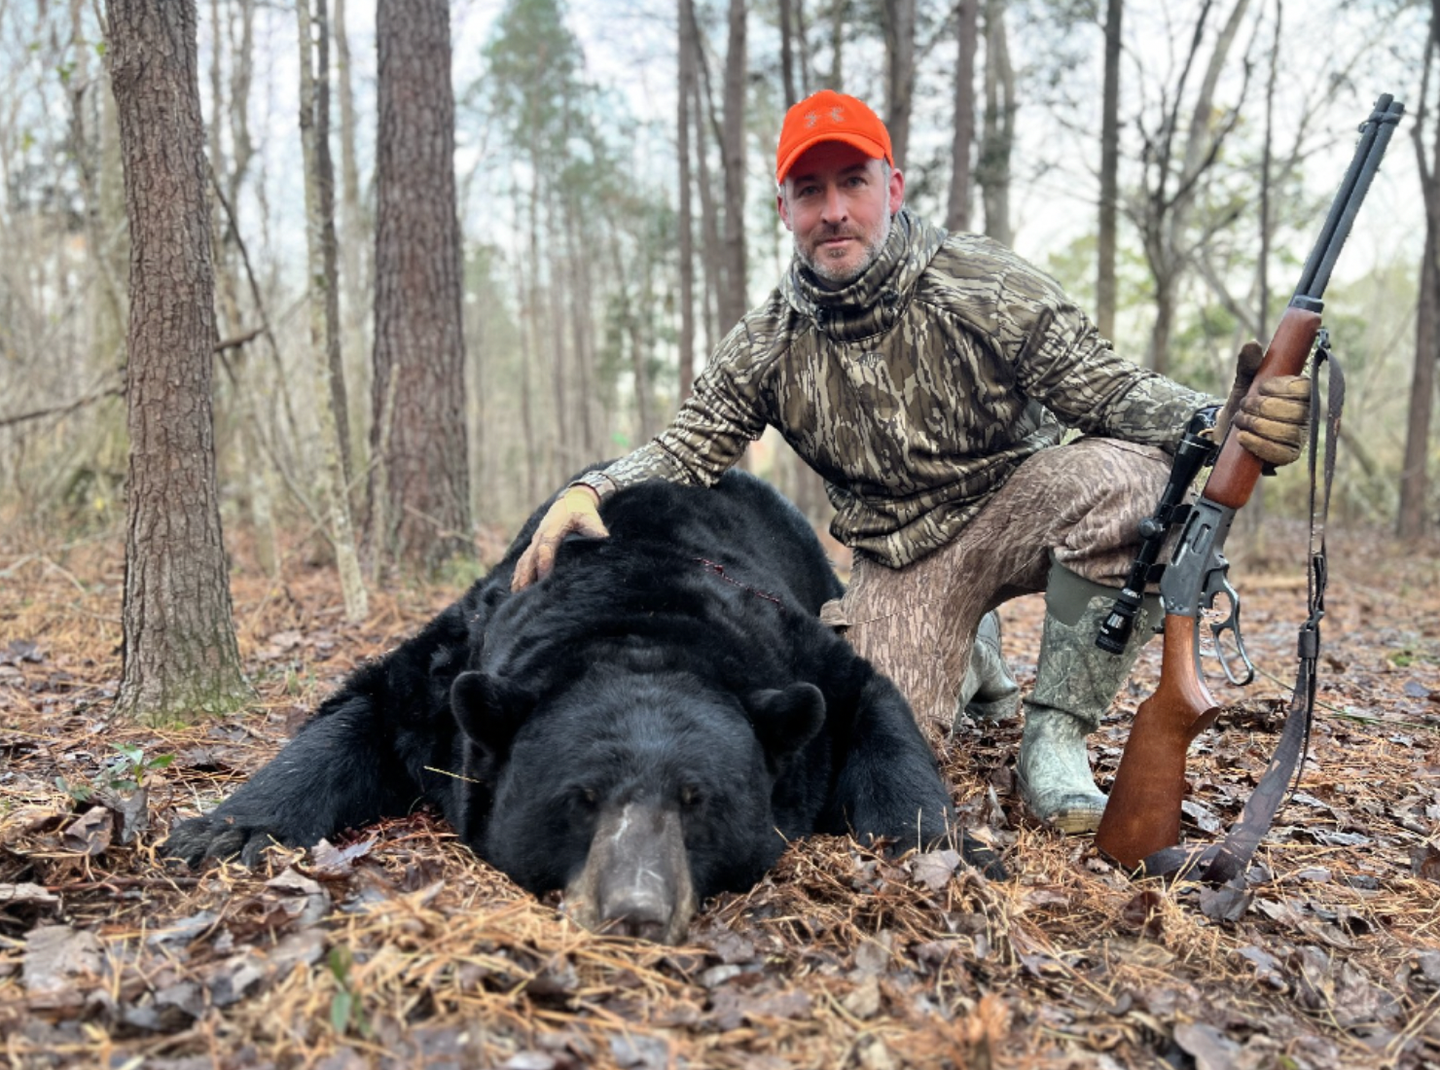 717-pound black bear